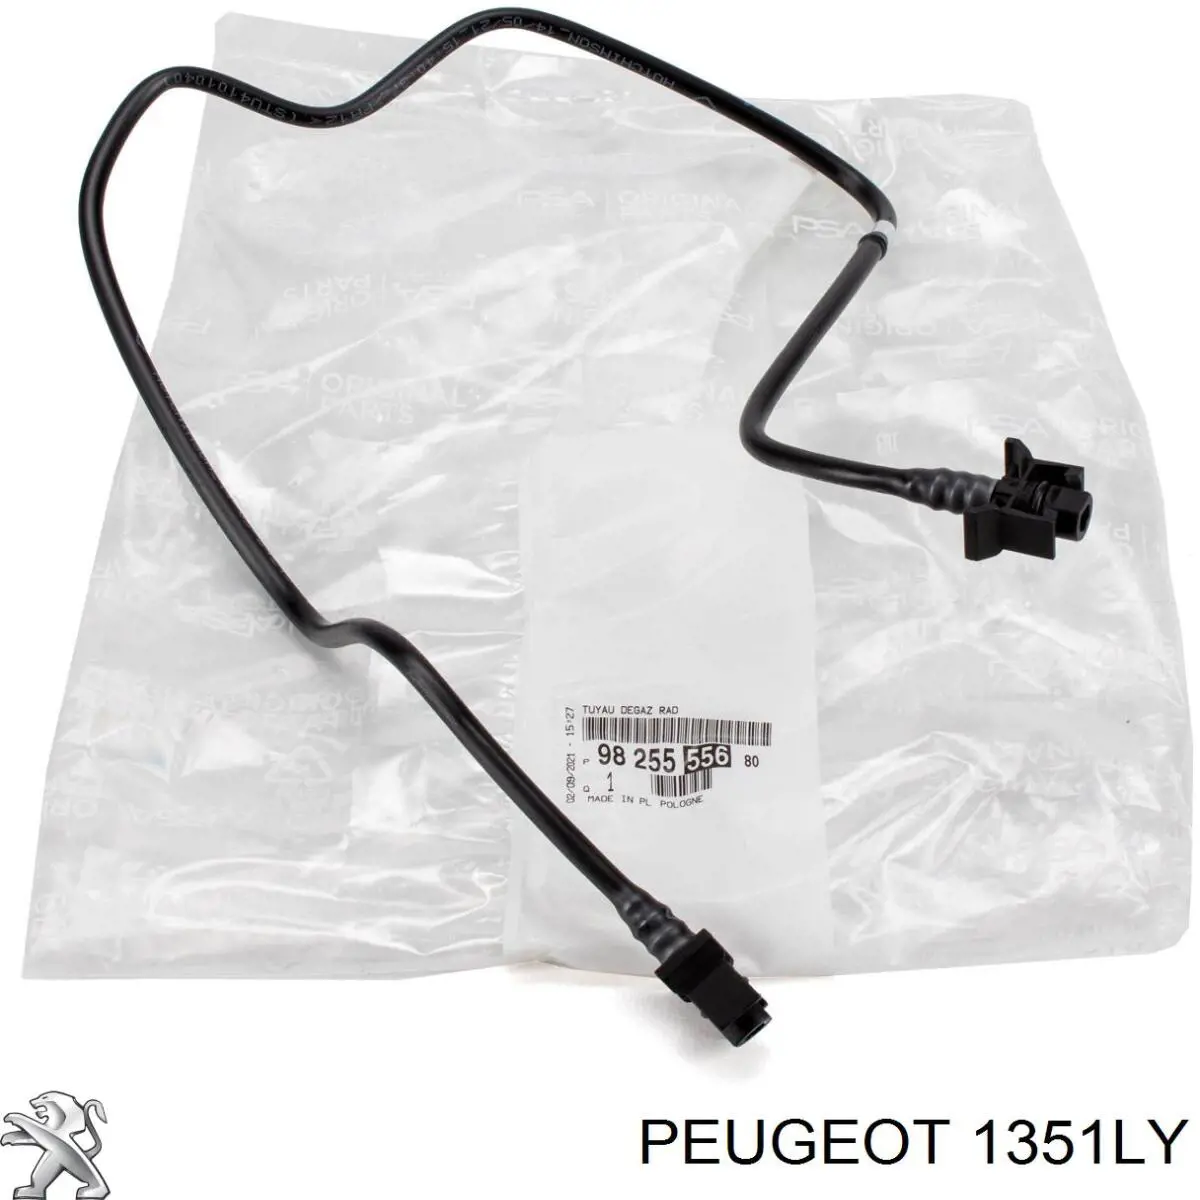 1351LY Peugeot/Citroen manguera de refrigeración